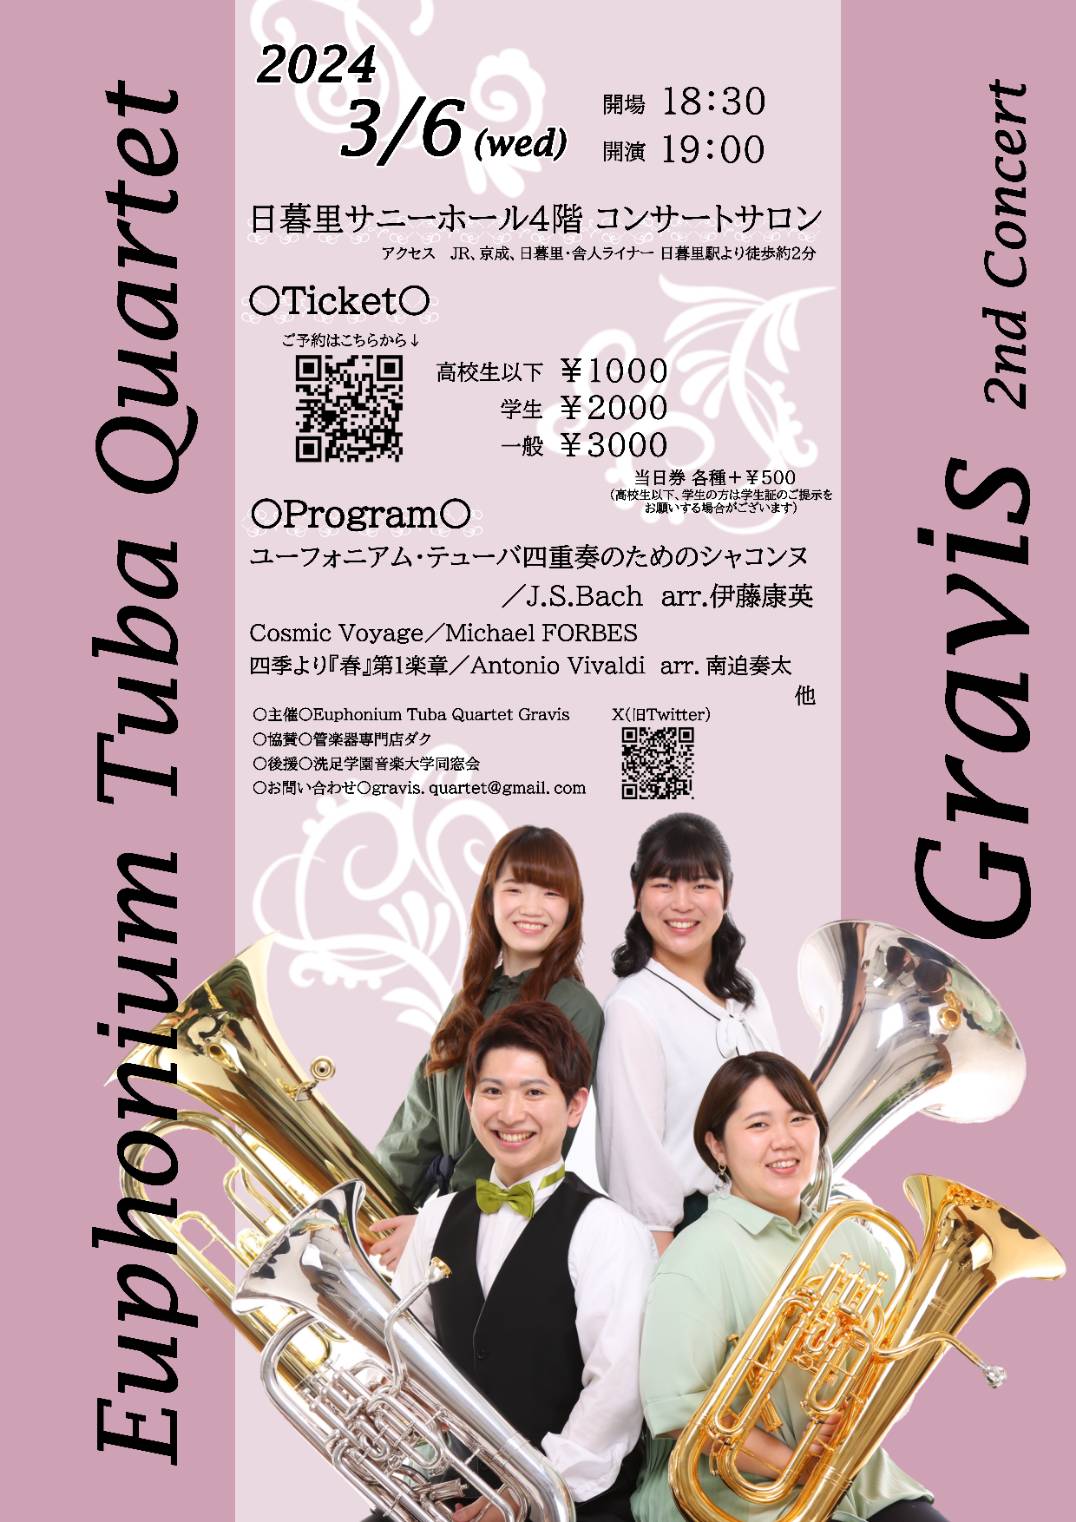 Euphonium Tuba Quartet Gravis～2nd Concert～